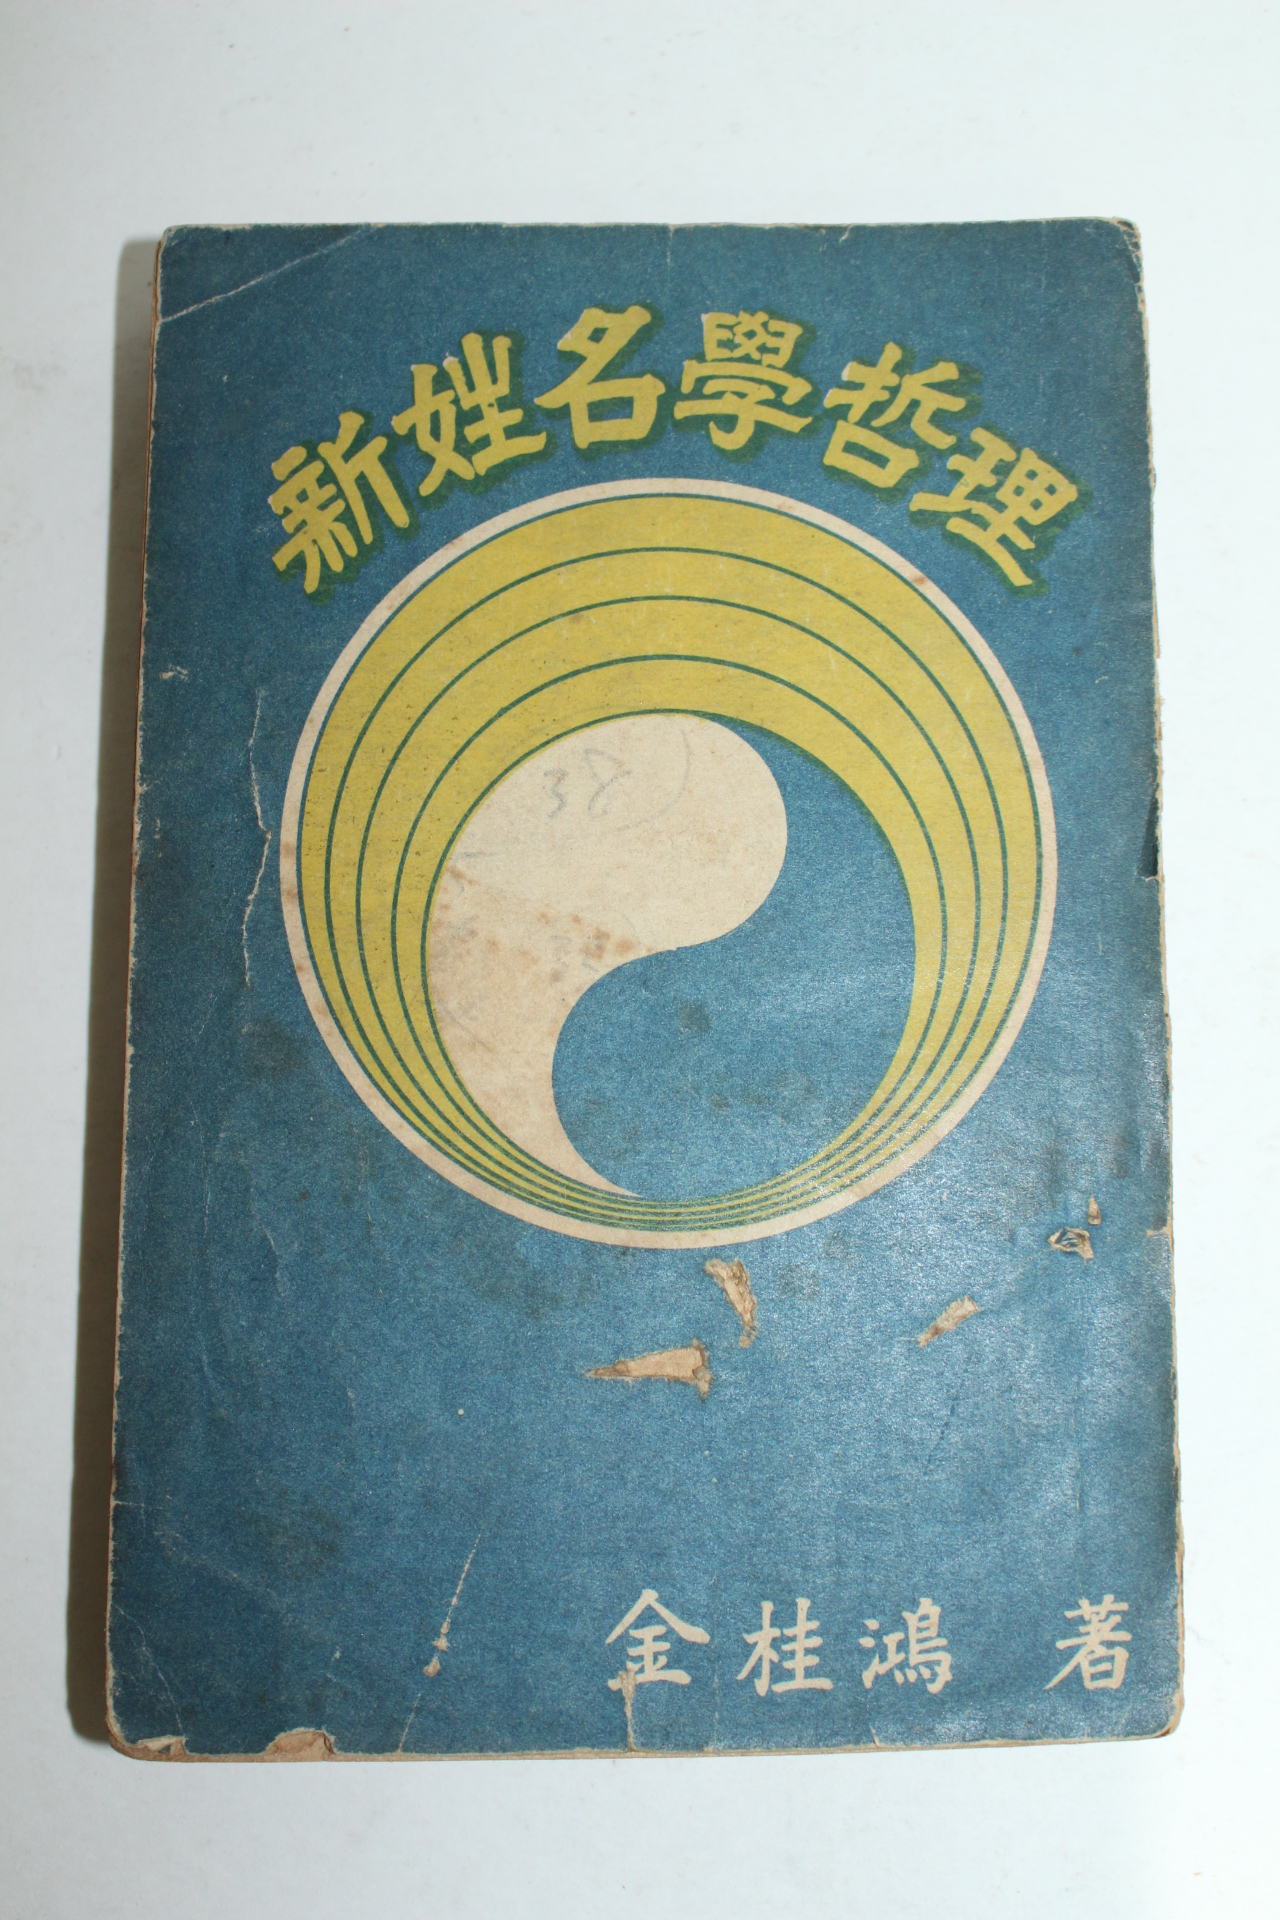 1957년 김계홍(金桂鴻) 신성명학철리(新姓名學哲理)